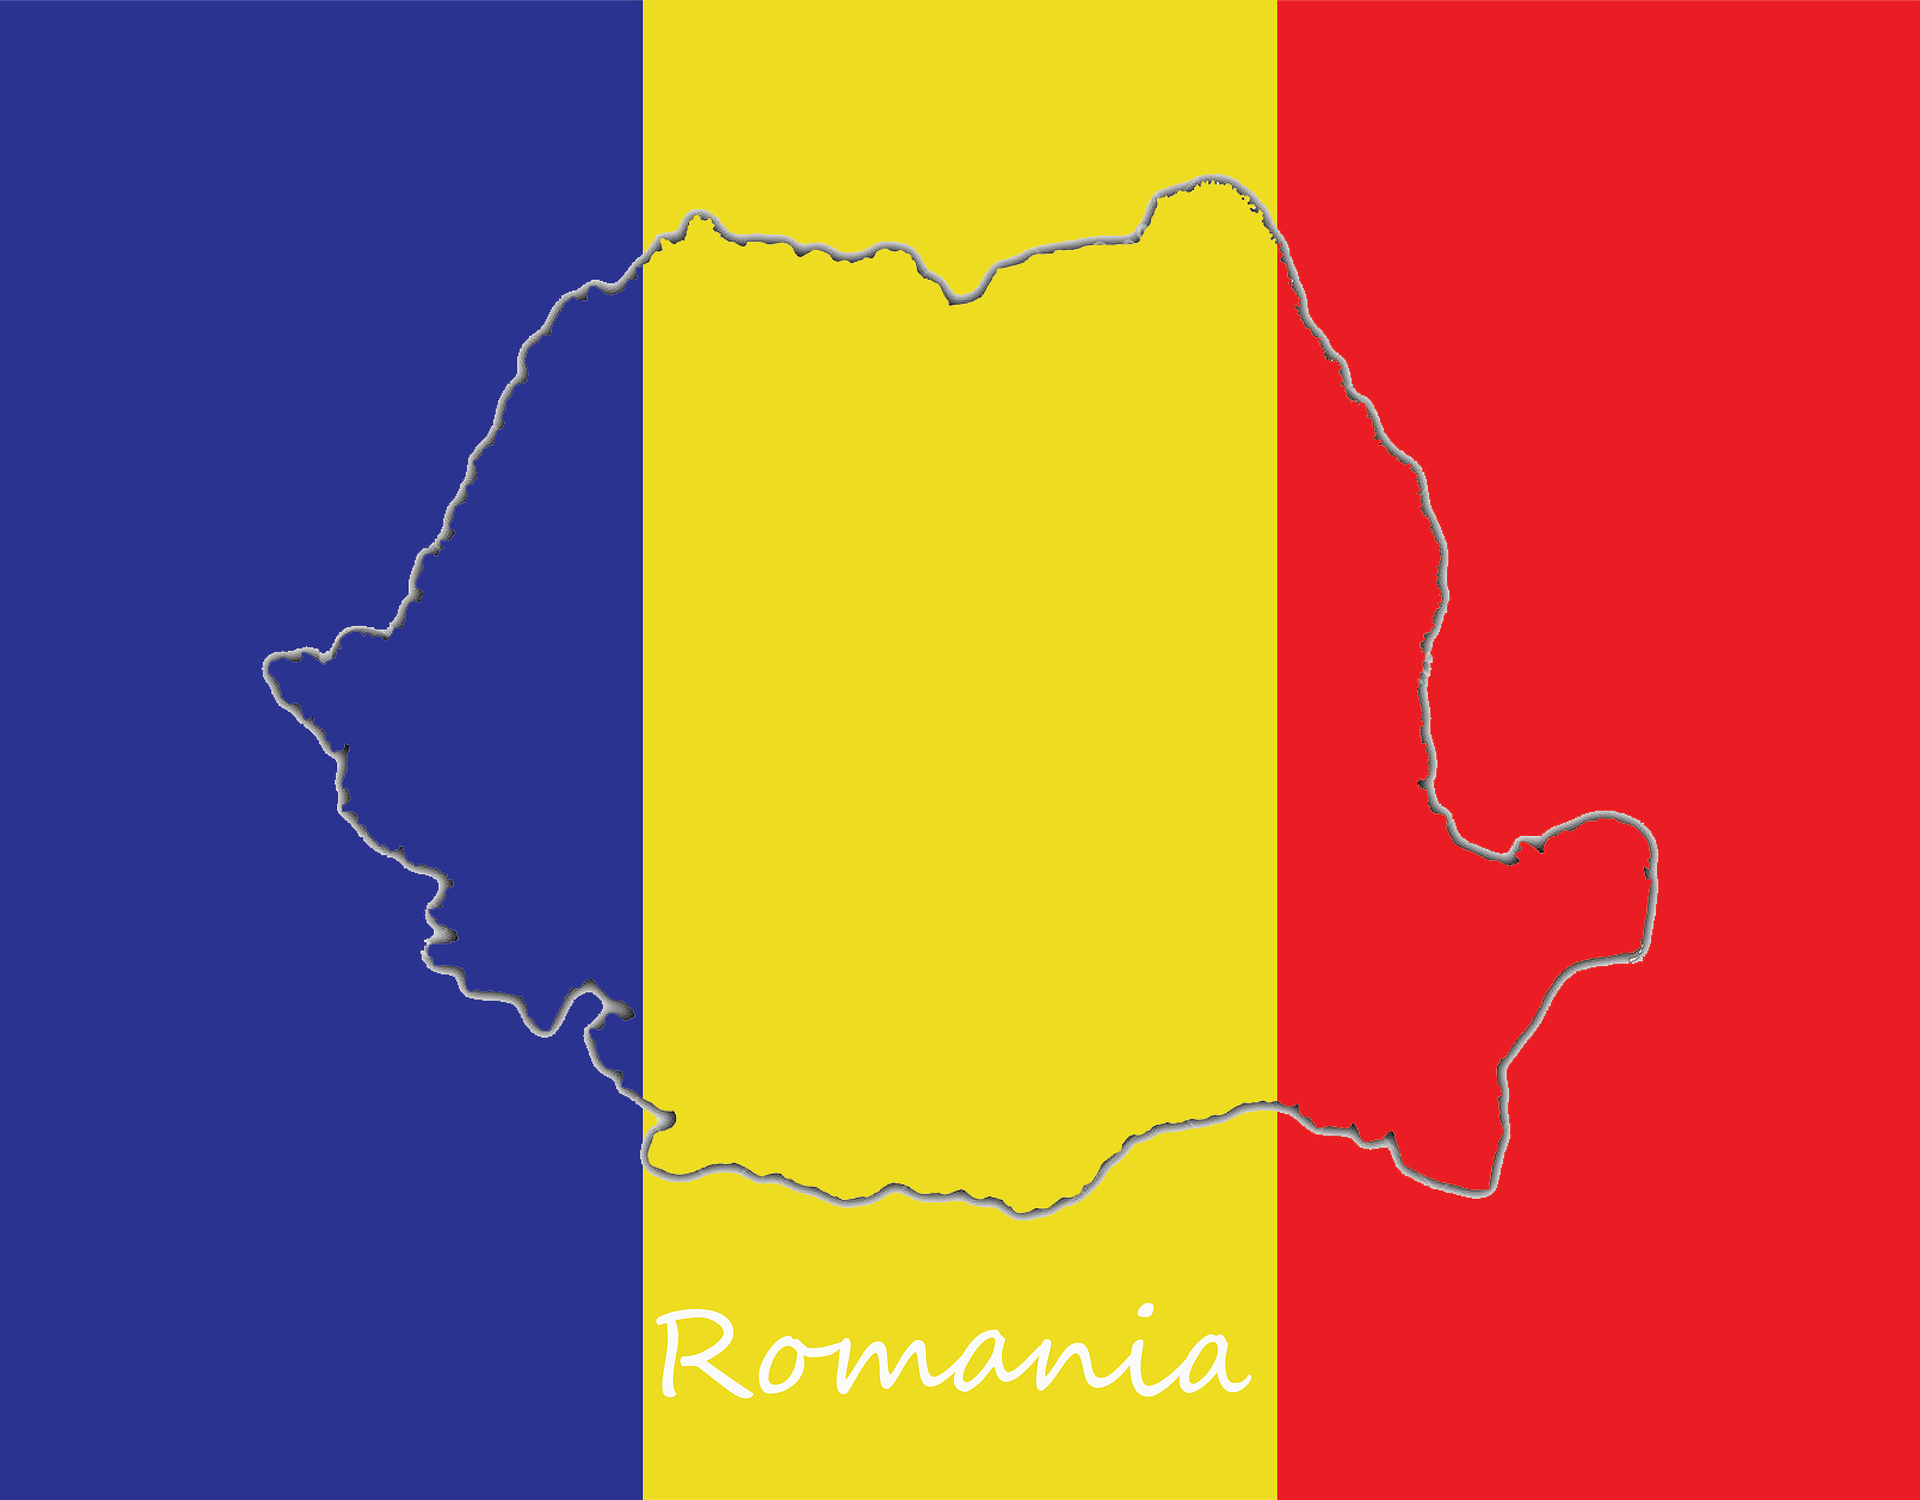 Rumania obtiene producción récord de cereales en 2021